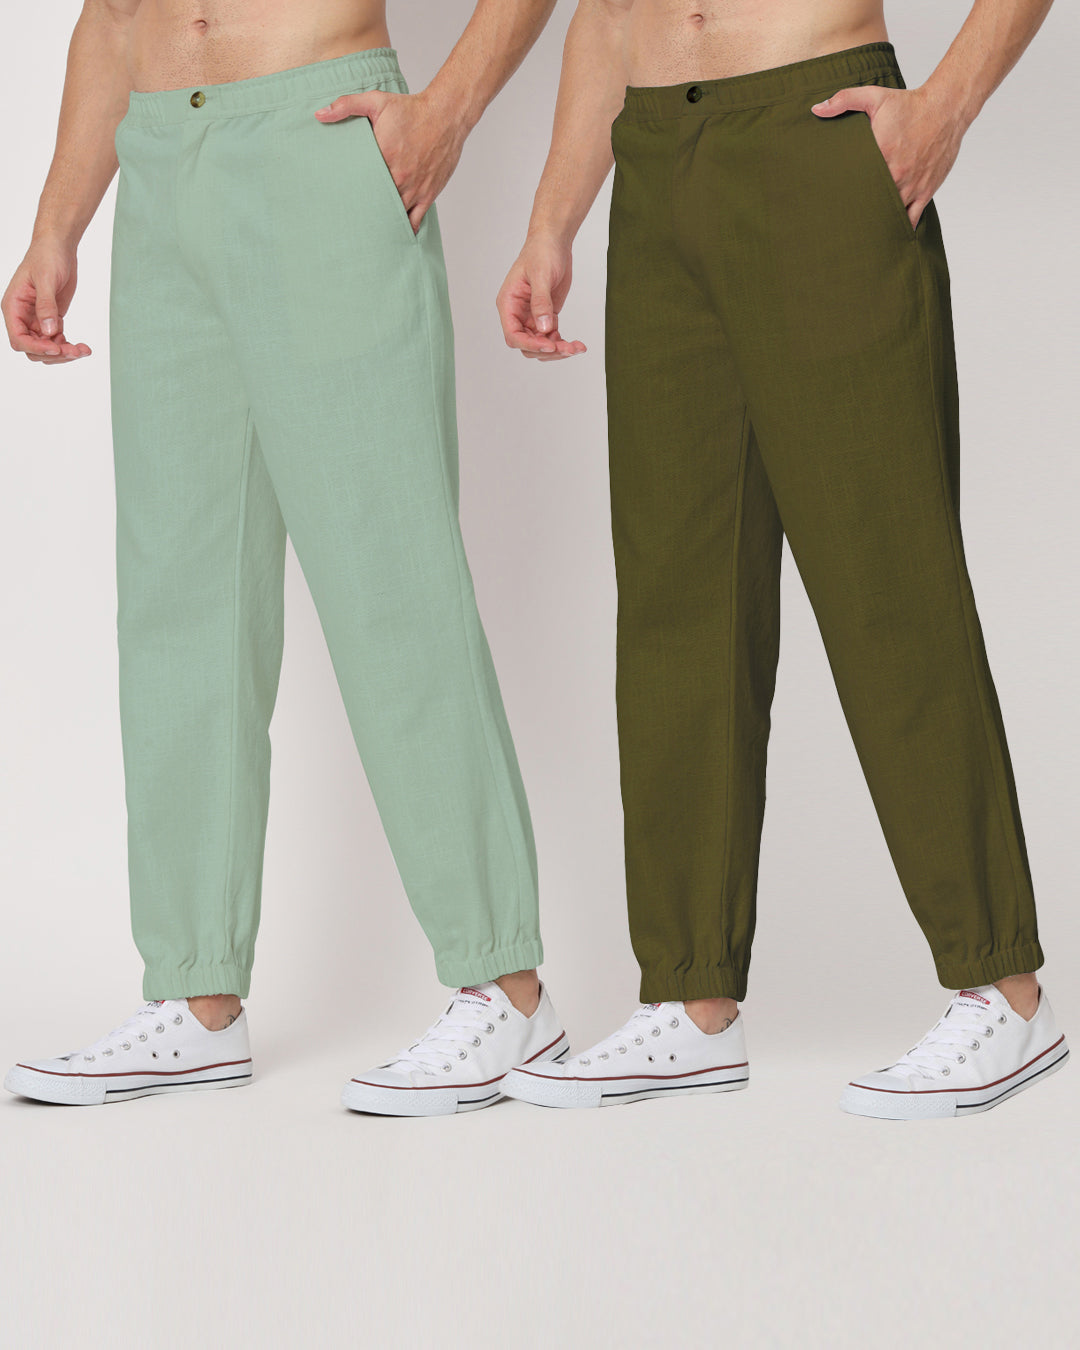 Combo: Spring Green & Olive Green Jog Men's Pants - Set of 2